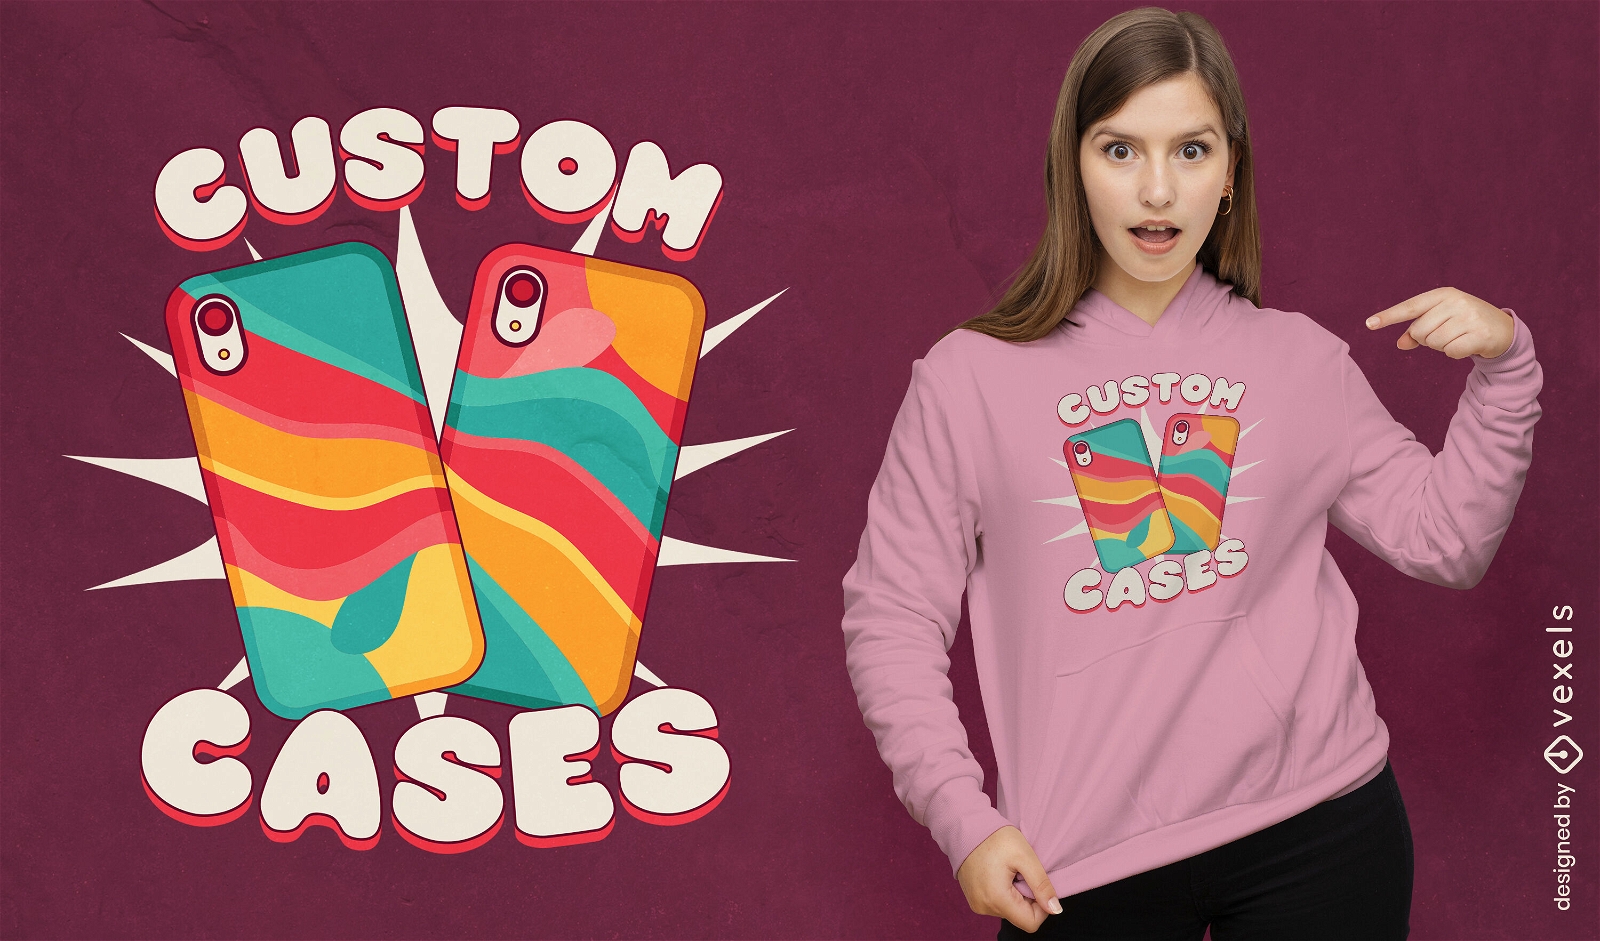 Custom cases t-shirt design